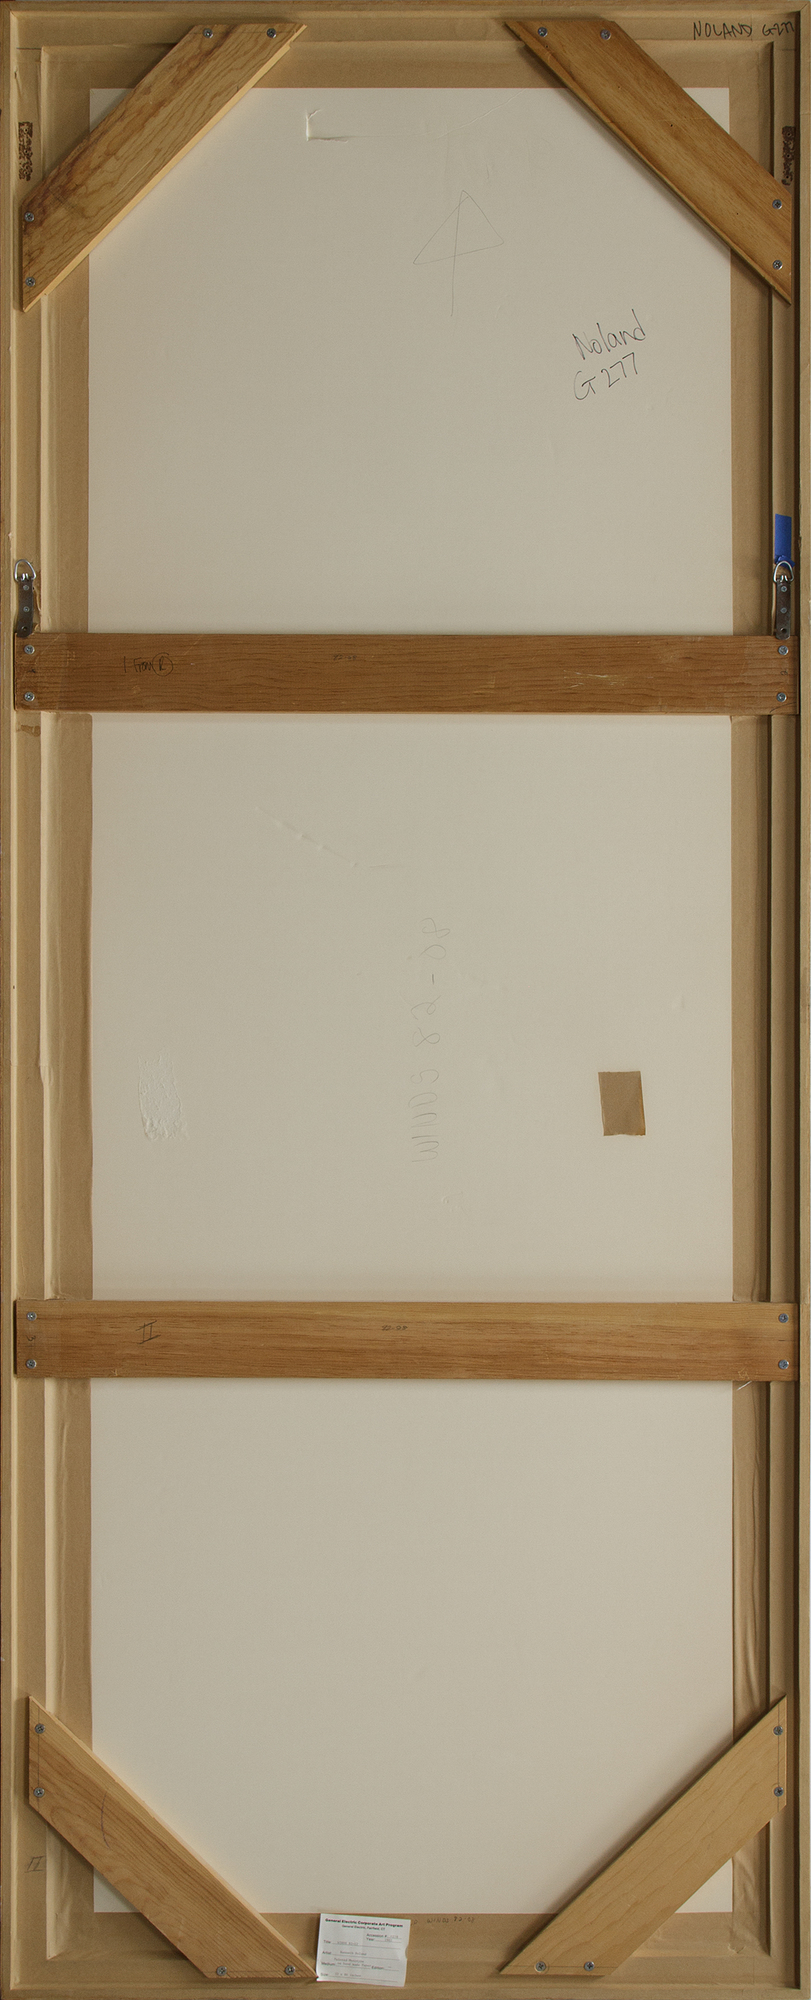 קנת נולנד - רוחות 82-08 - מונוטיפ צבוע על נייר בעבודת יד - 86 x 32 אינץ'.